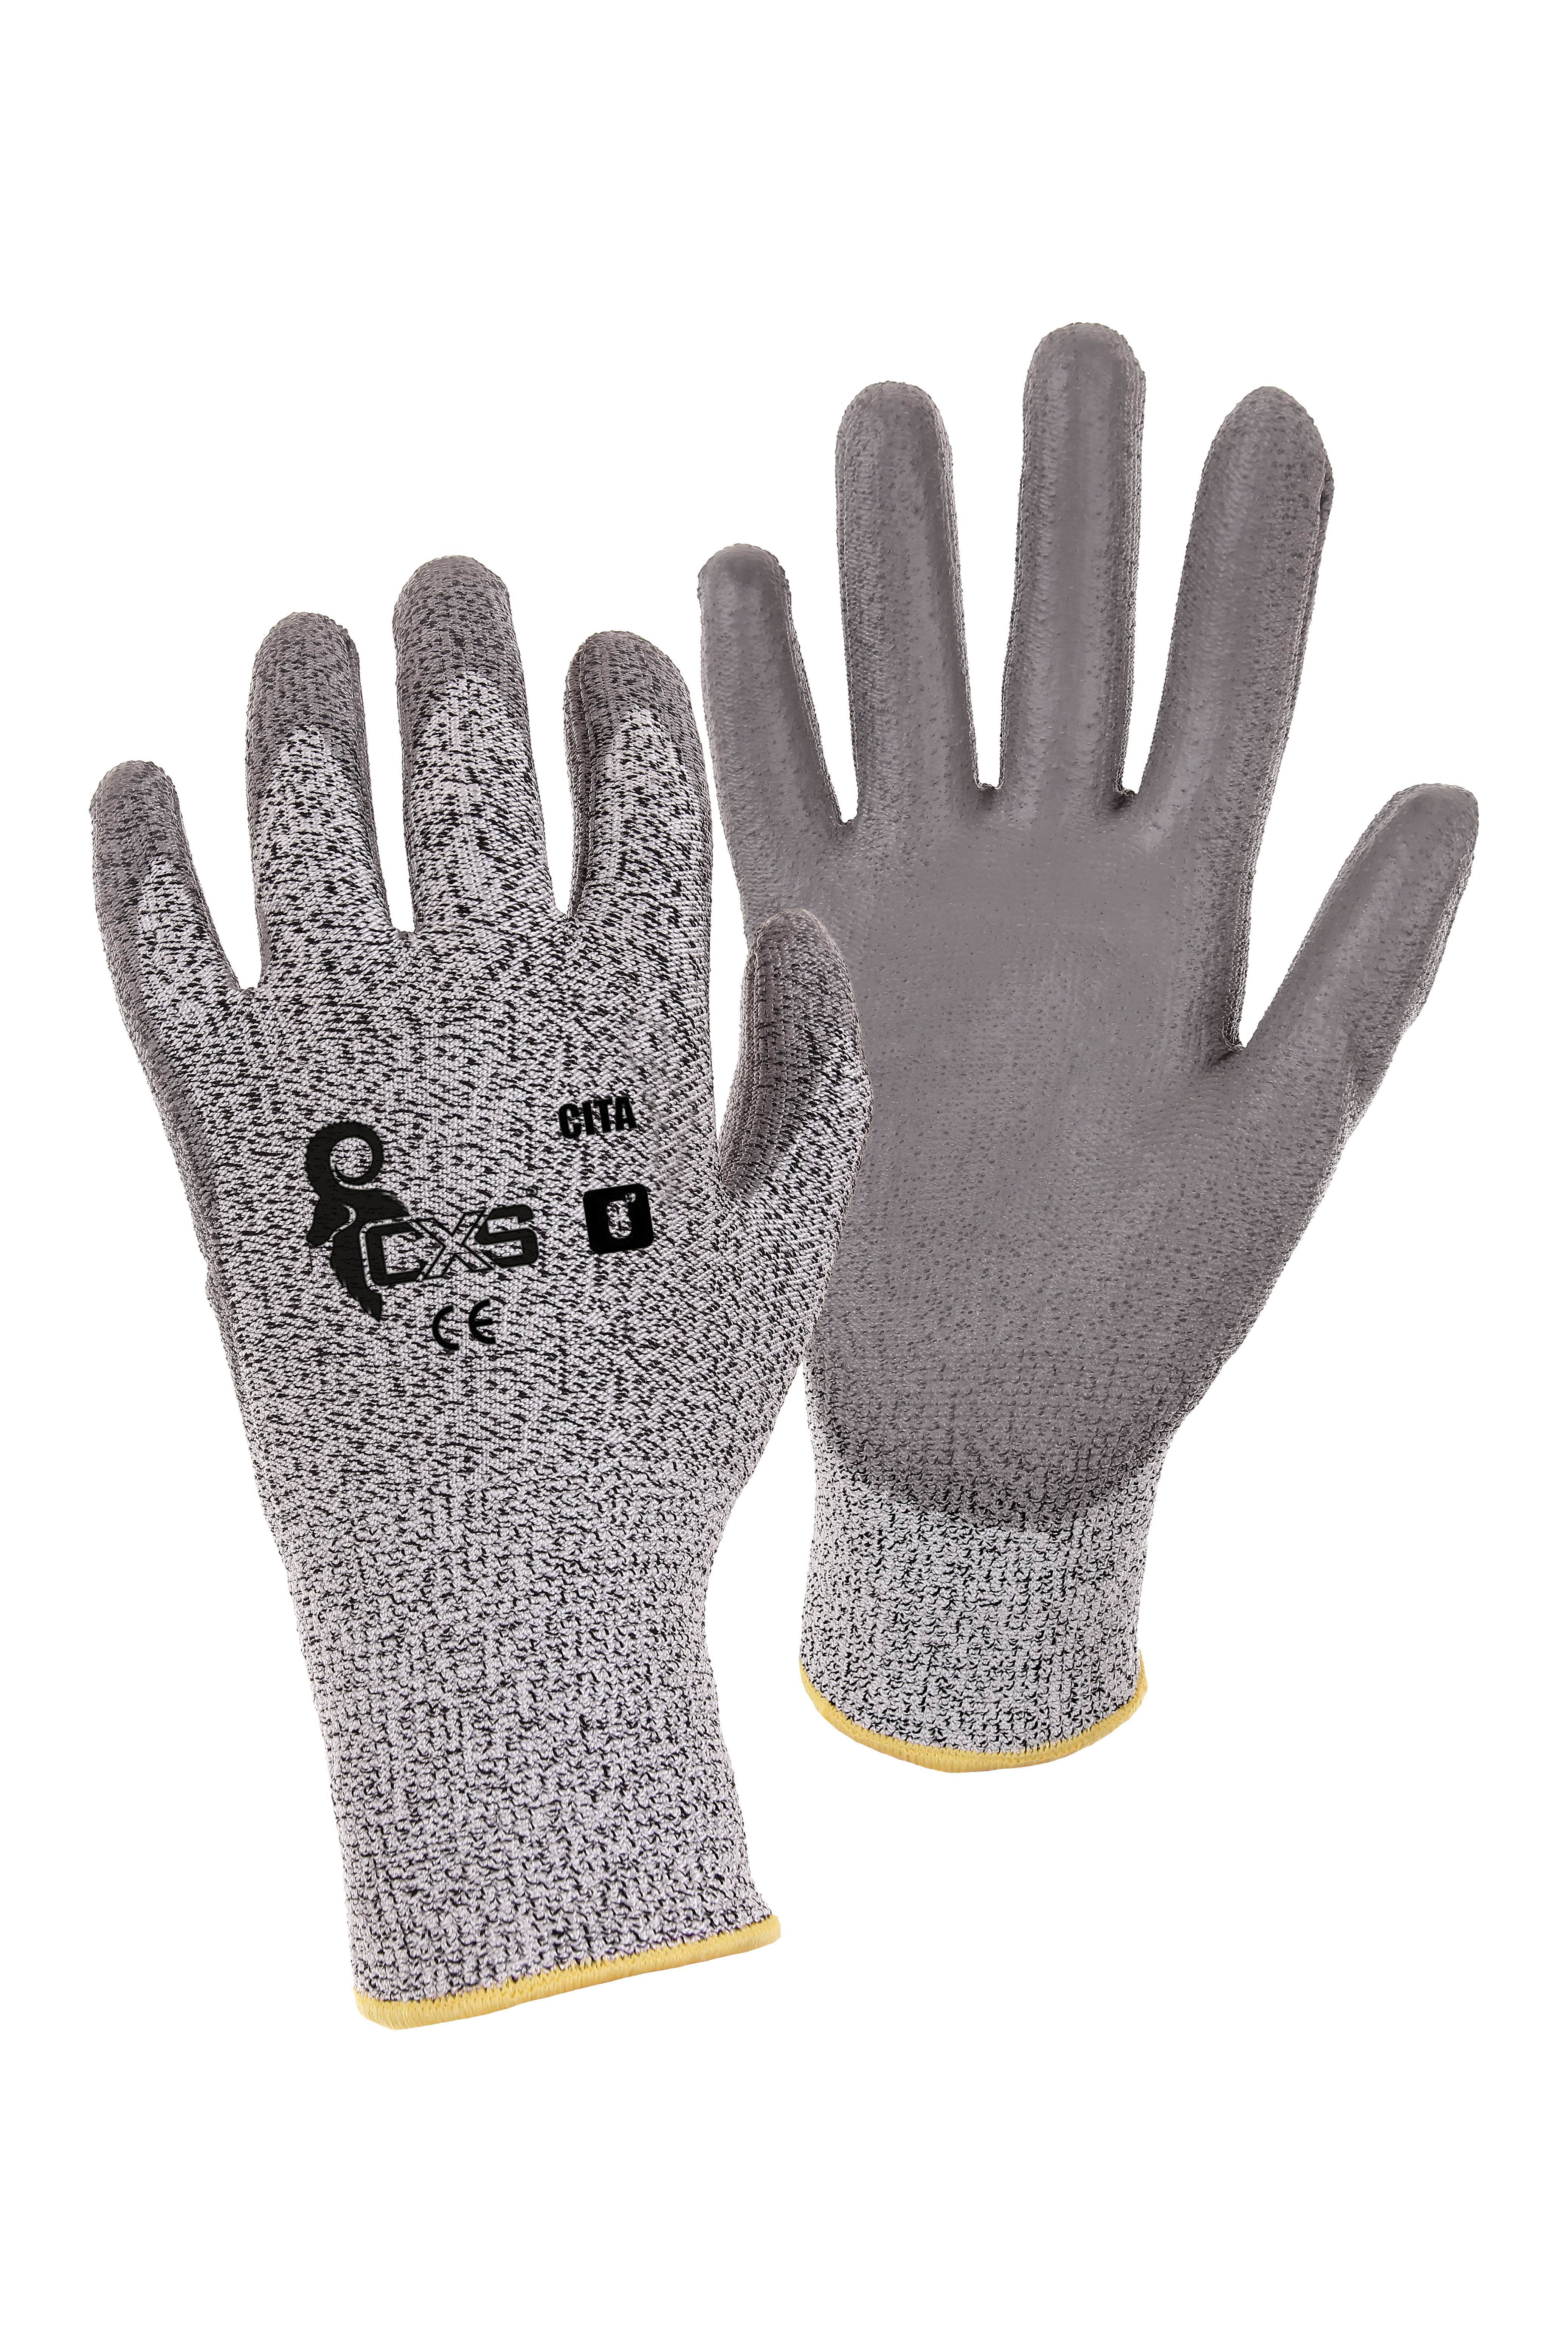 rukavice CITA, protipořezové, šedé, velikost 7 0.04 Kg TOP Sklad4 606057 23